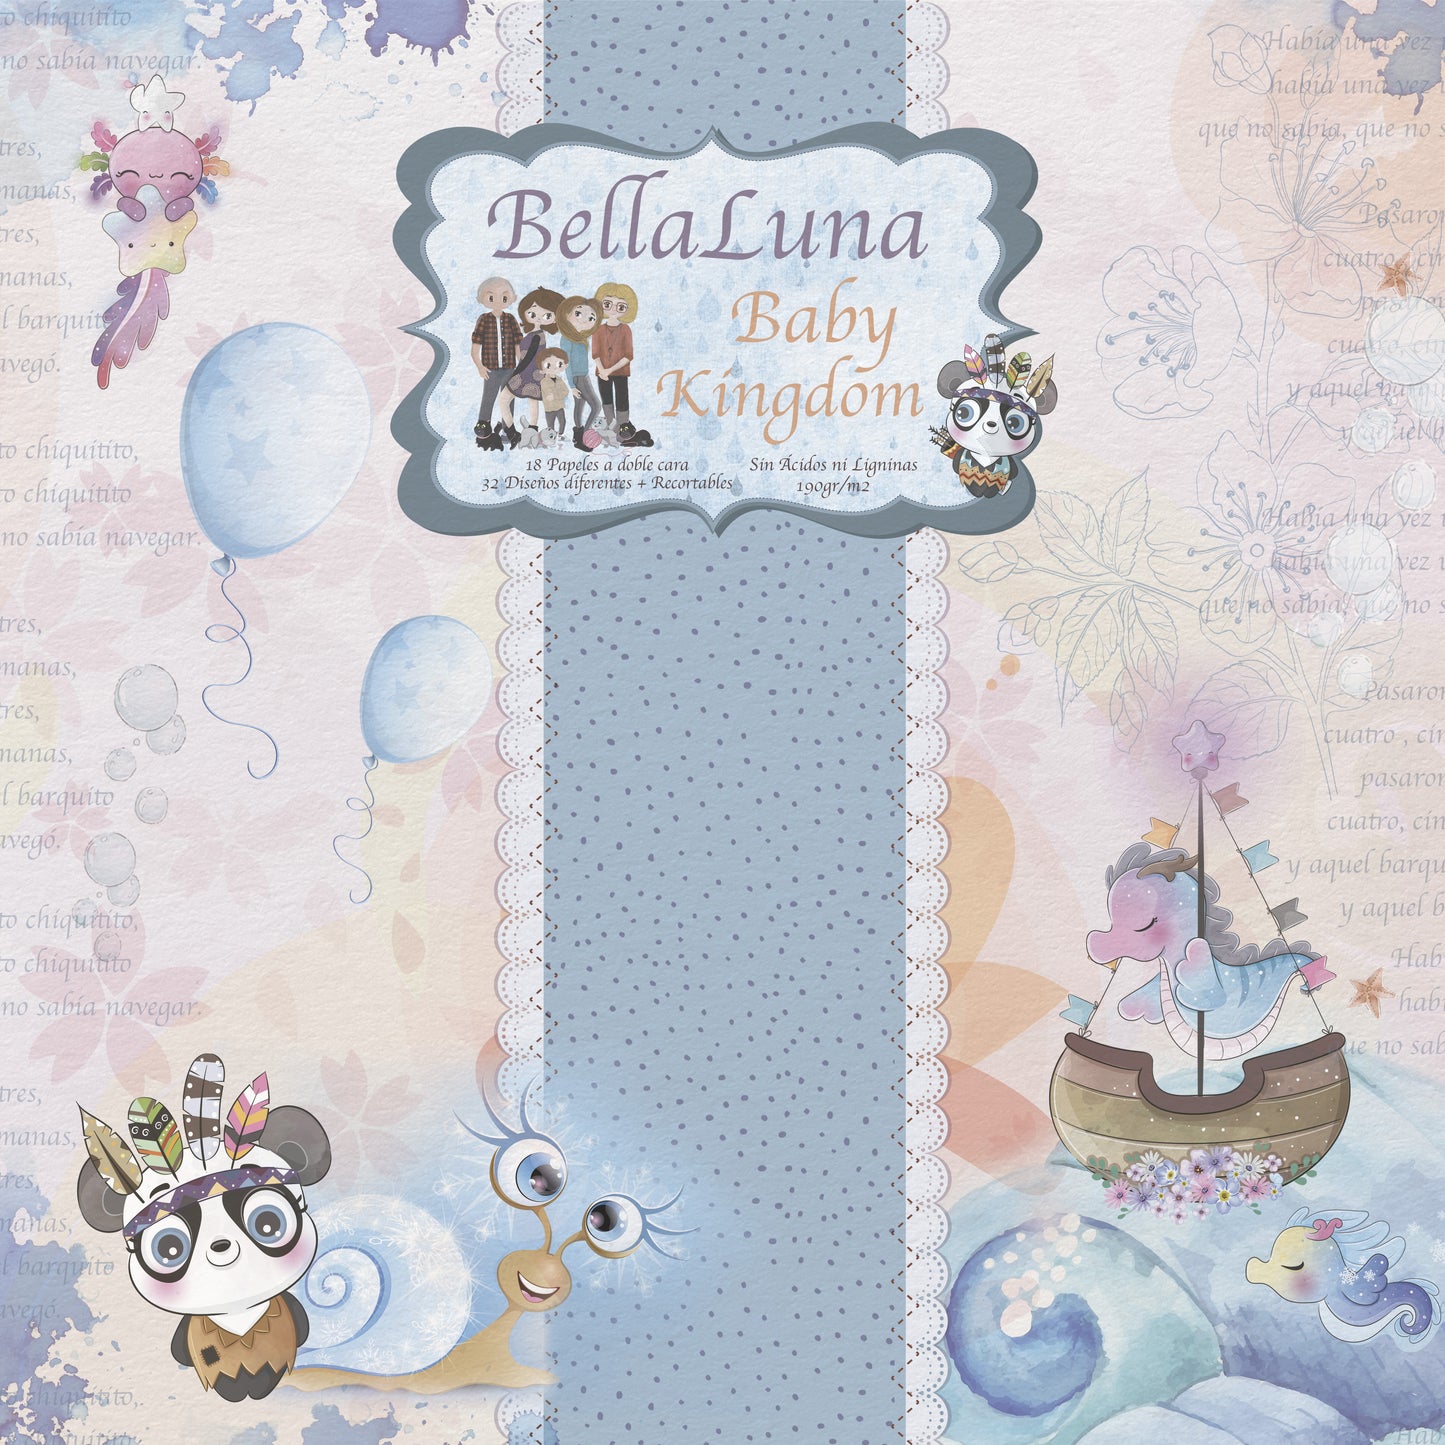 Pad 8x8" Bellaluna Crafts con 18 papeles doble cara Baby Kingdom